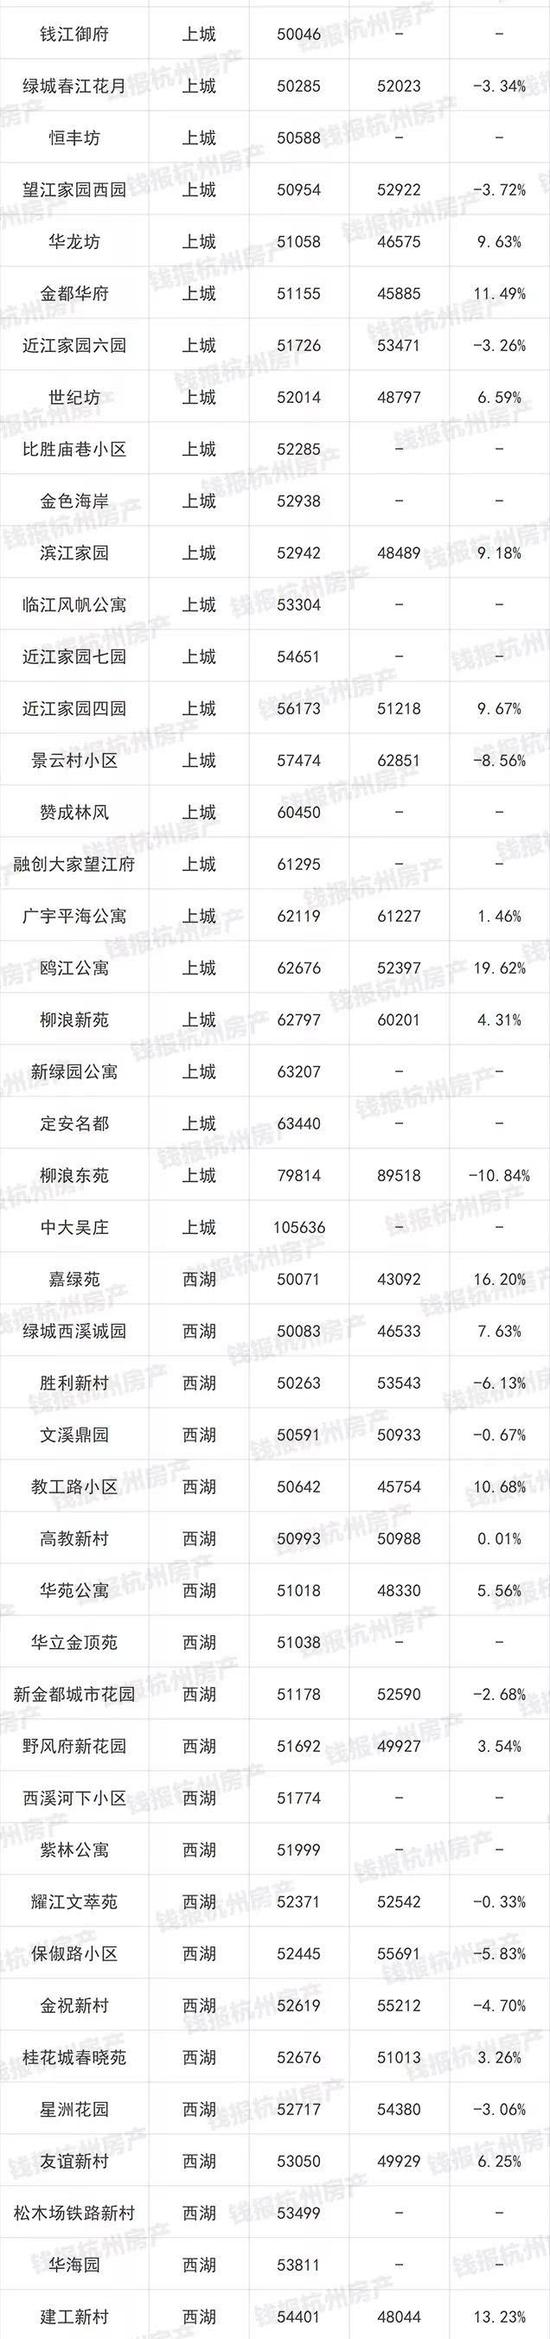 杭州1000多个二手房小区最新价格出炉(图)